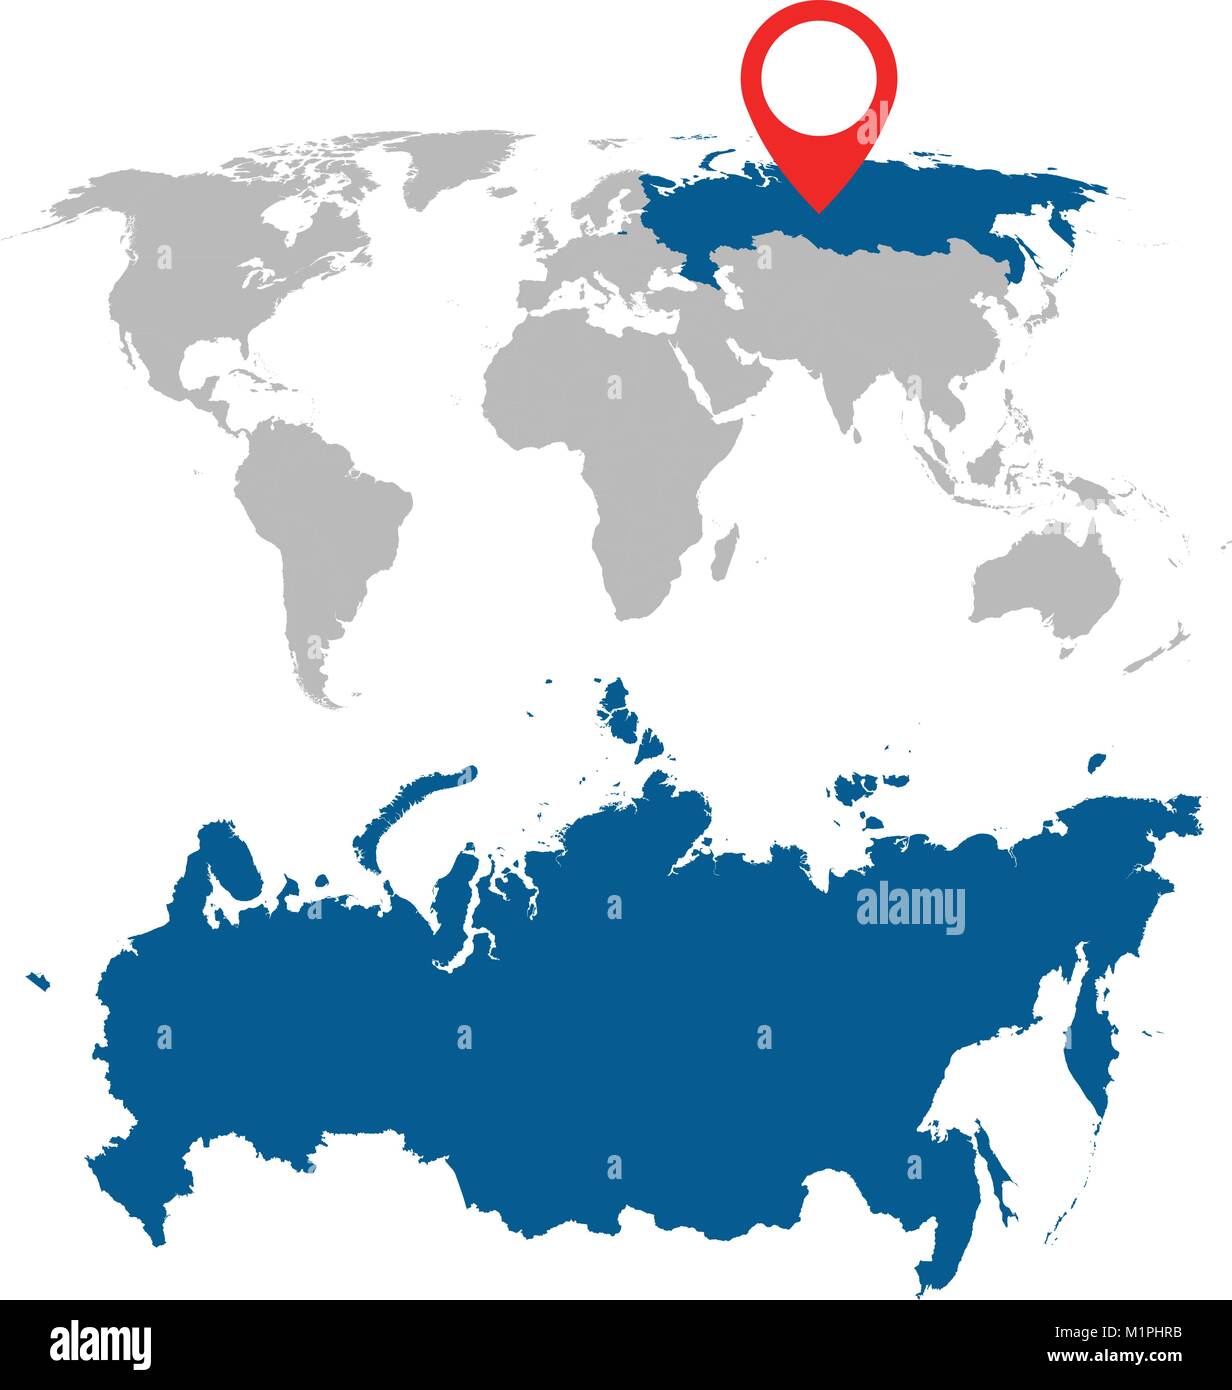 Carte Détaillée De La Russie Fédération De Russie Et L